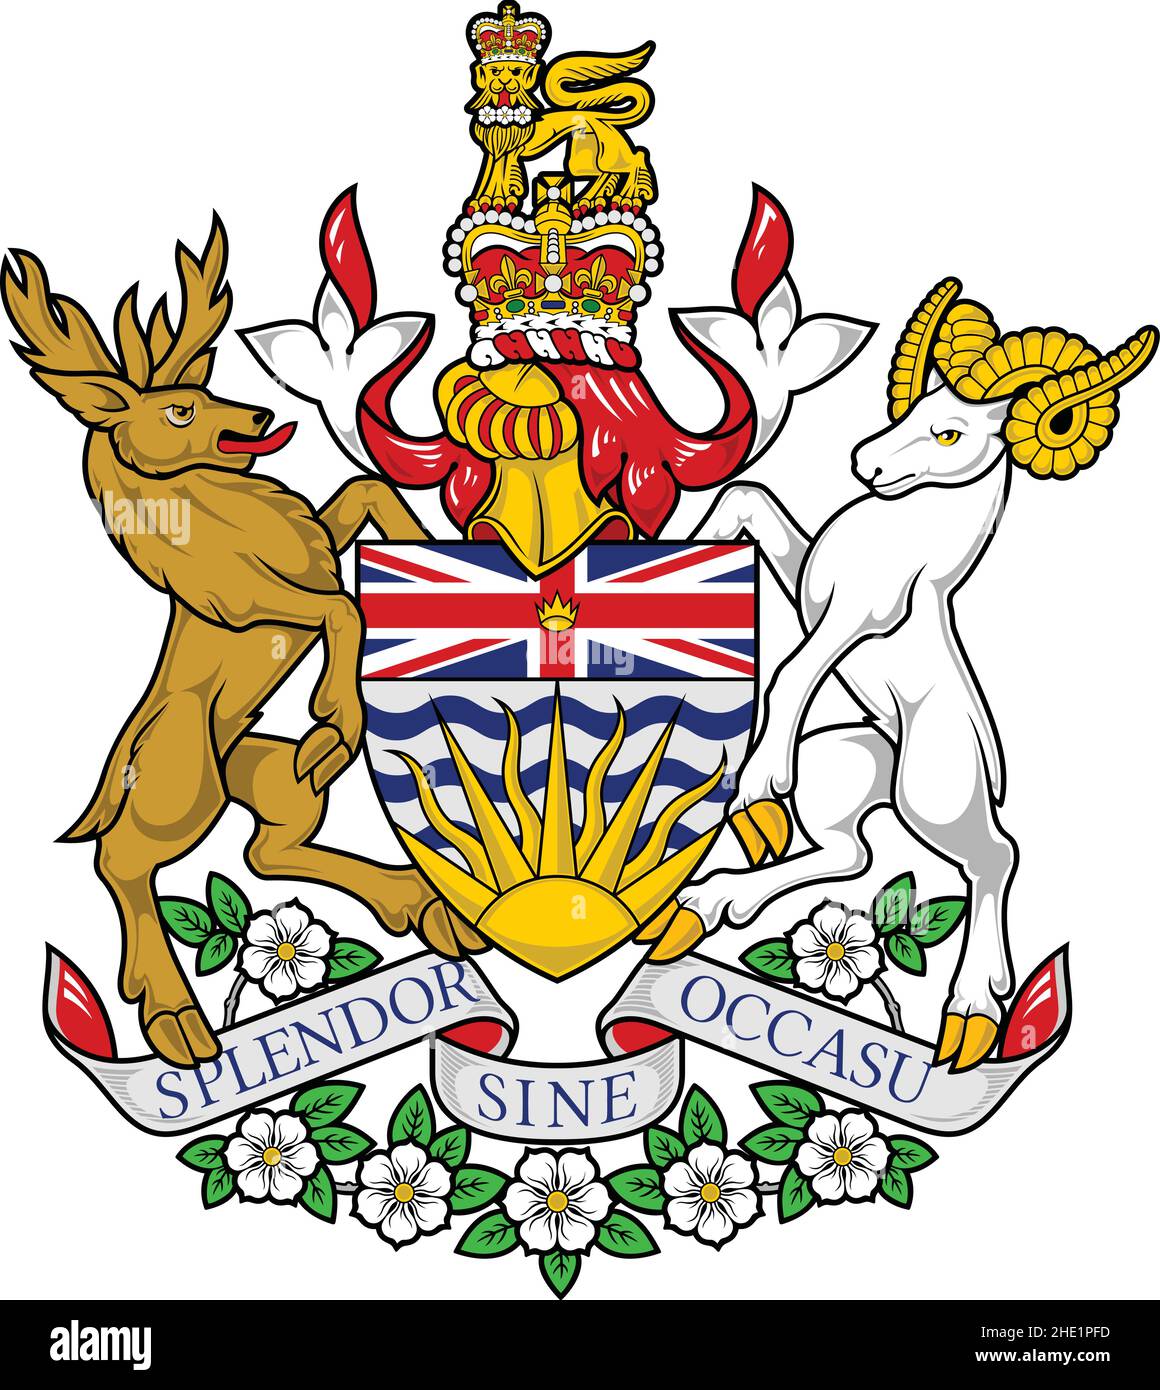 Armoiries vectorielles officielles actuelles de la province canadienne de LA COLOMBIE-BRITANNIQUE, CANADA Illustration de Vecteur